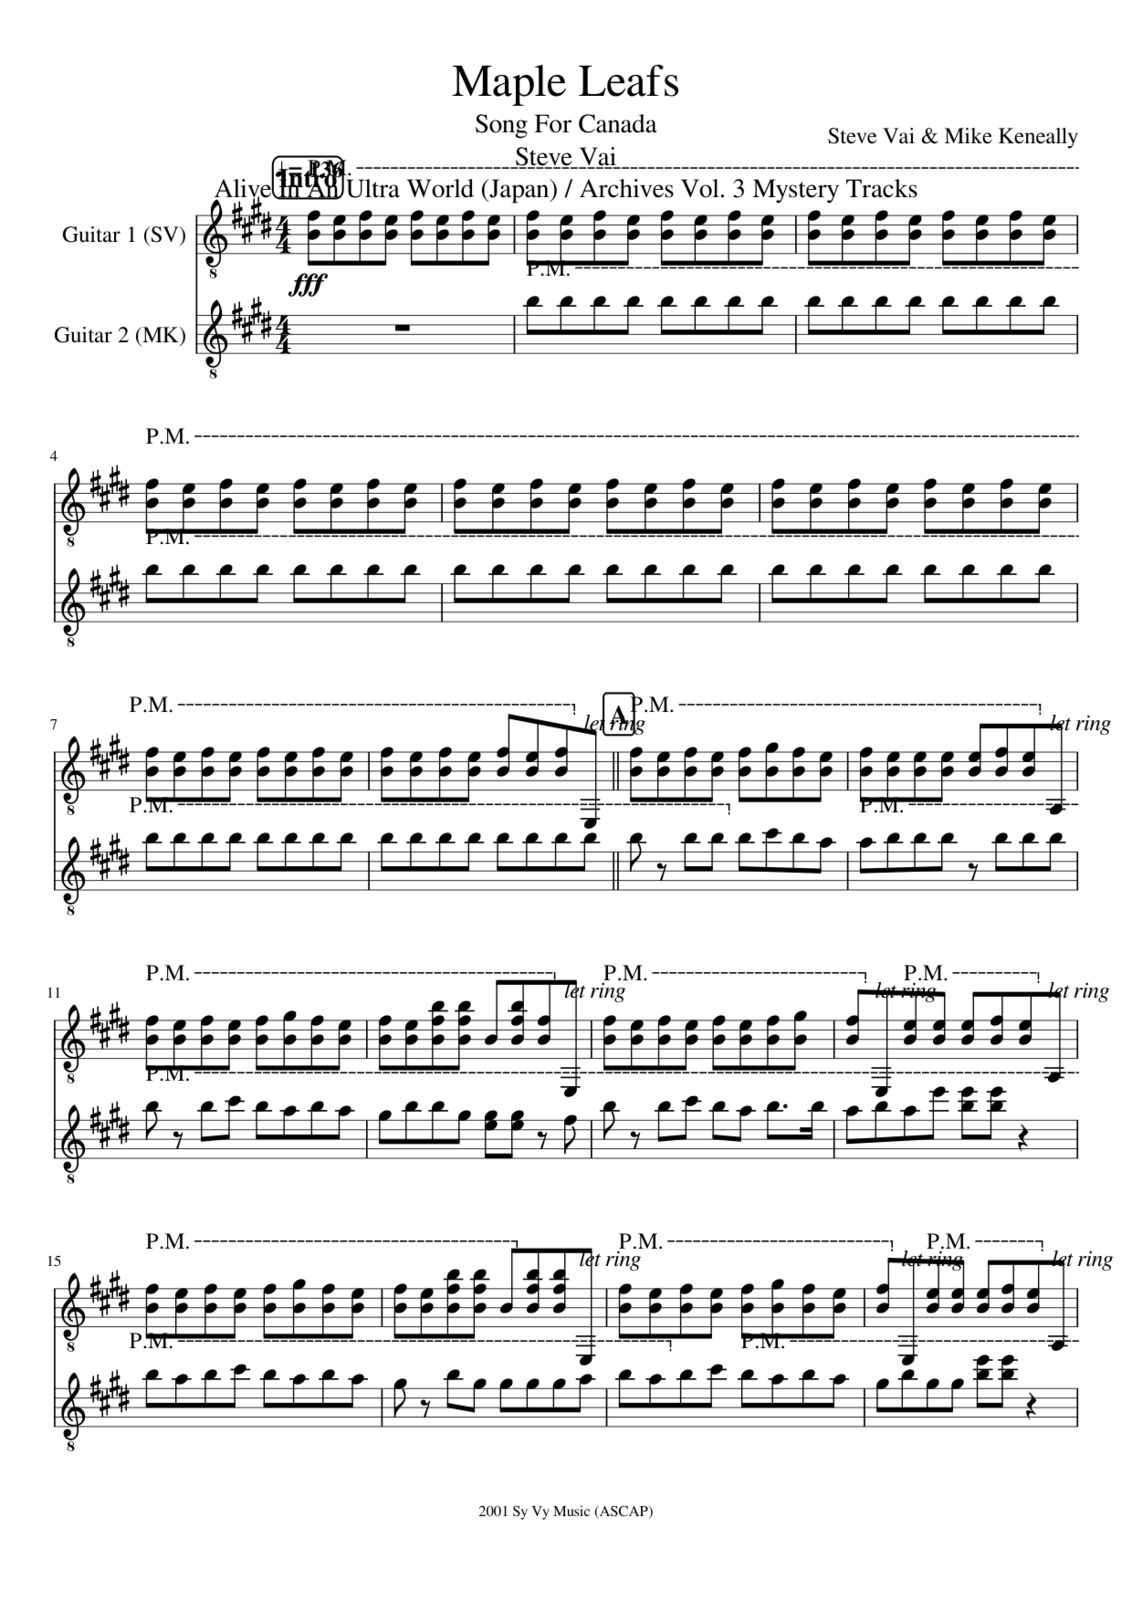 Vechnaya prizrachnaya vstrechnaya slide, Image 20